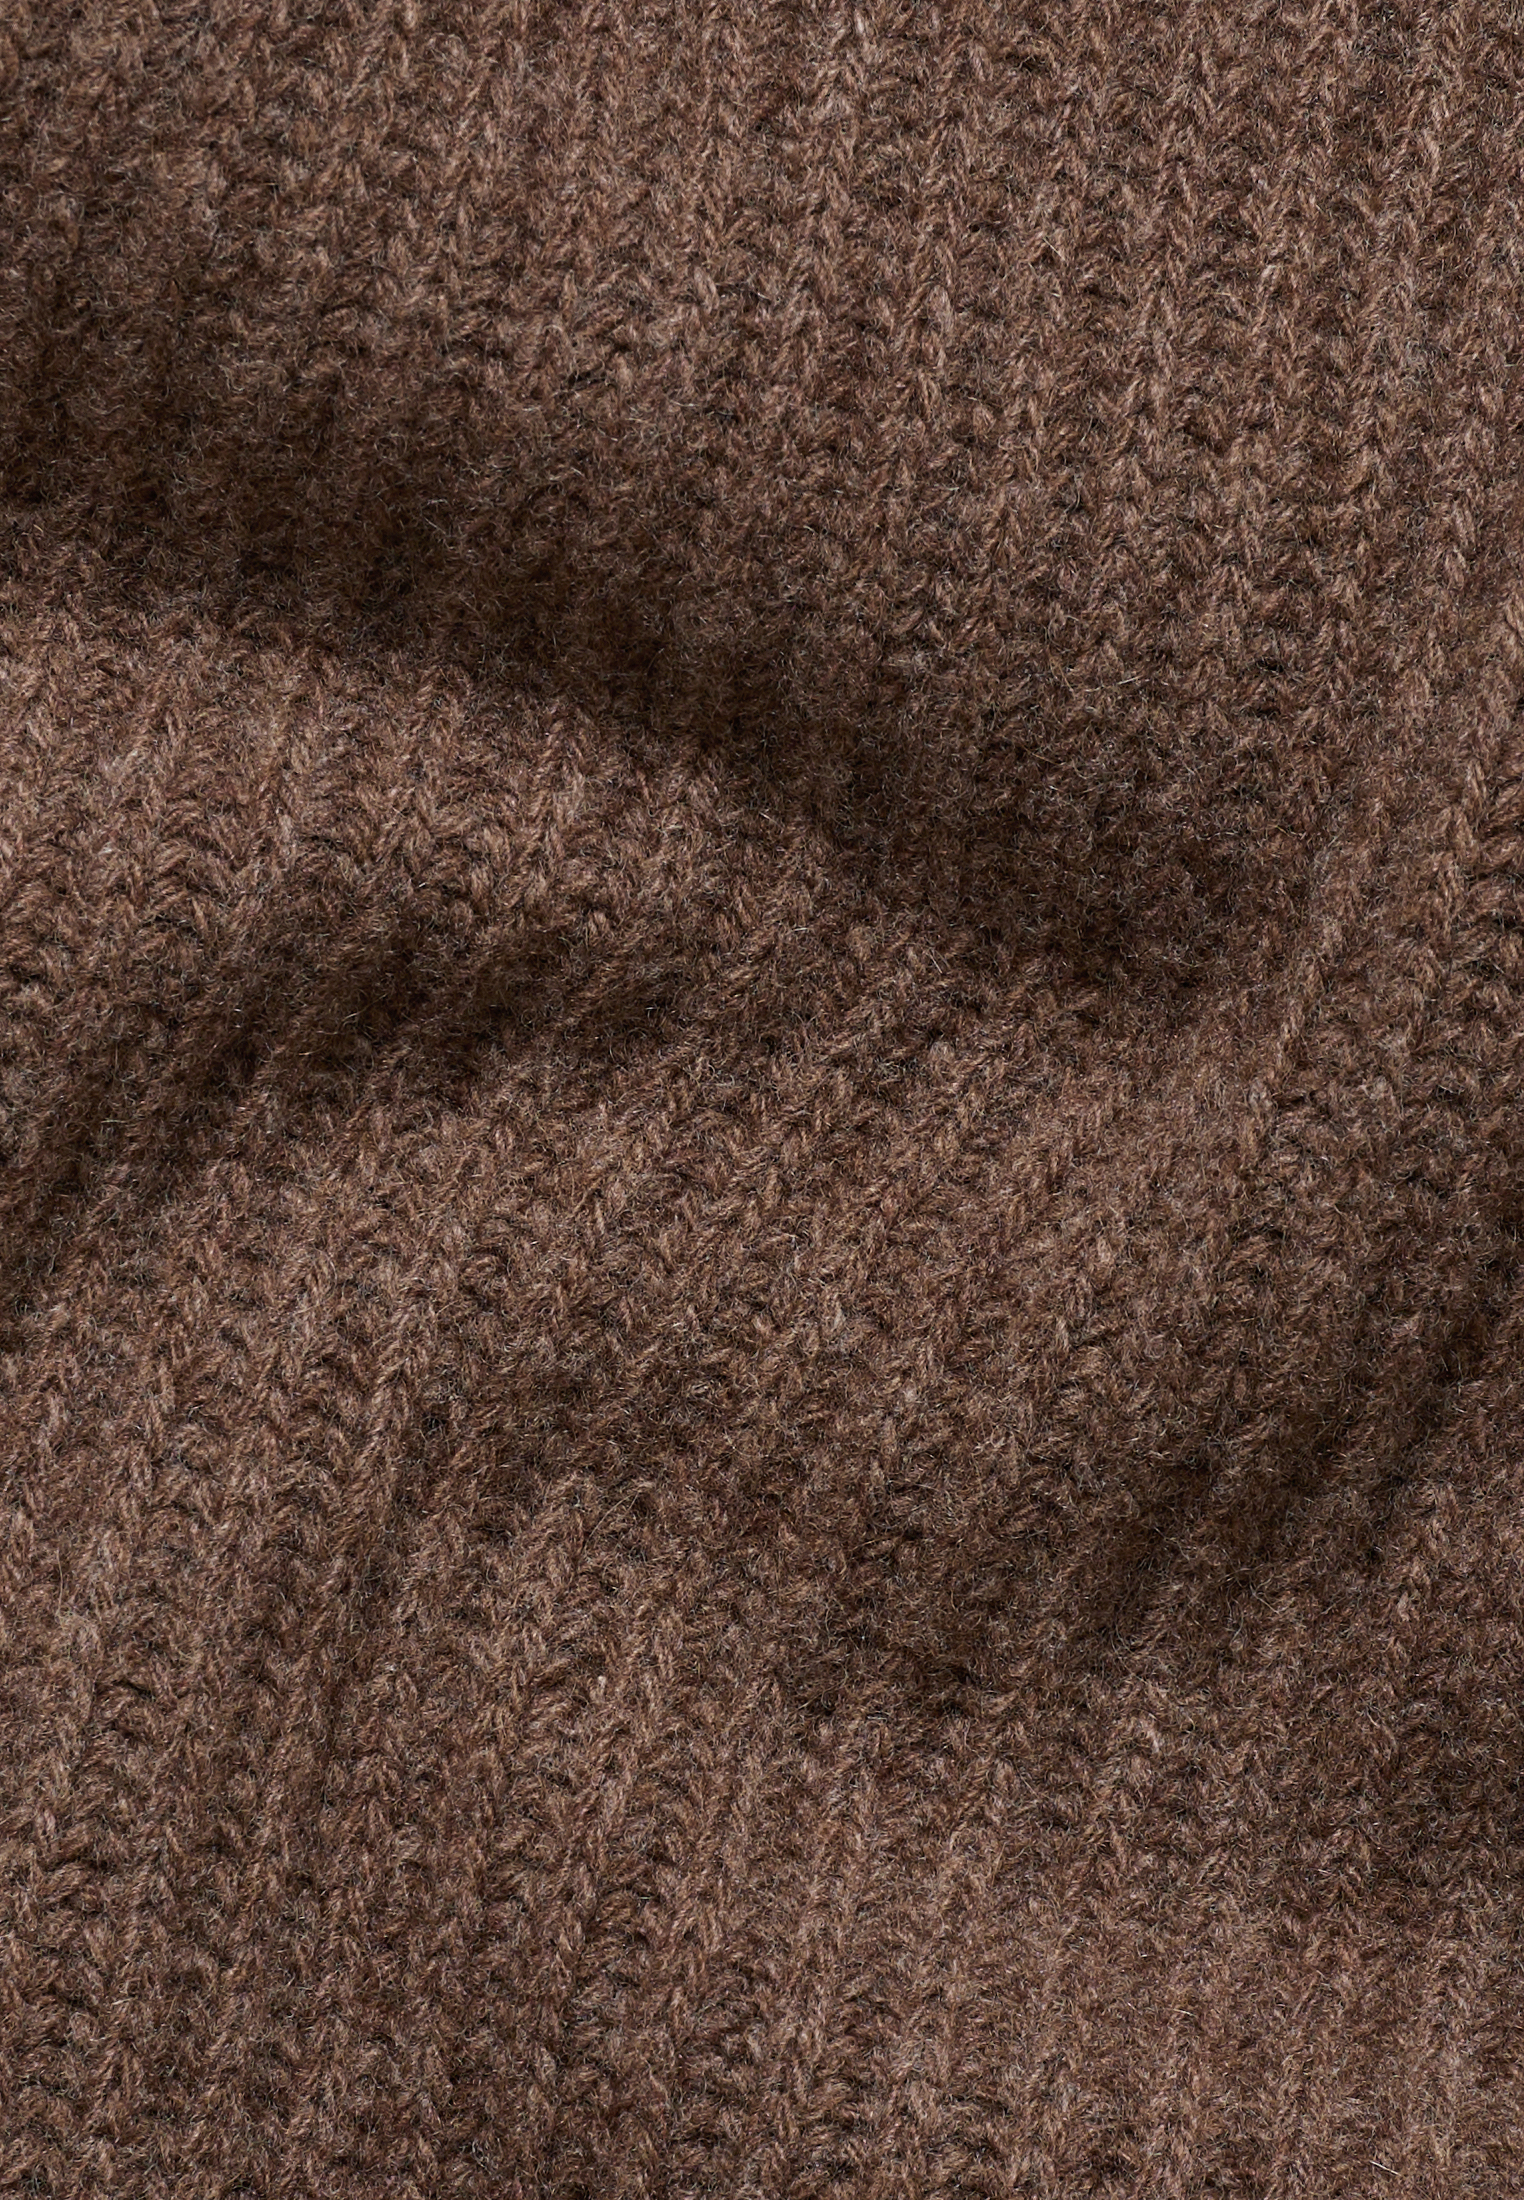 Knitted jumper in dark brown plain